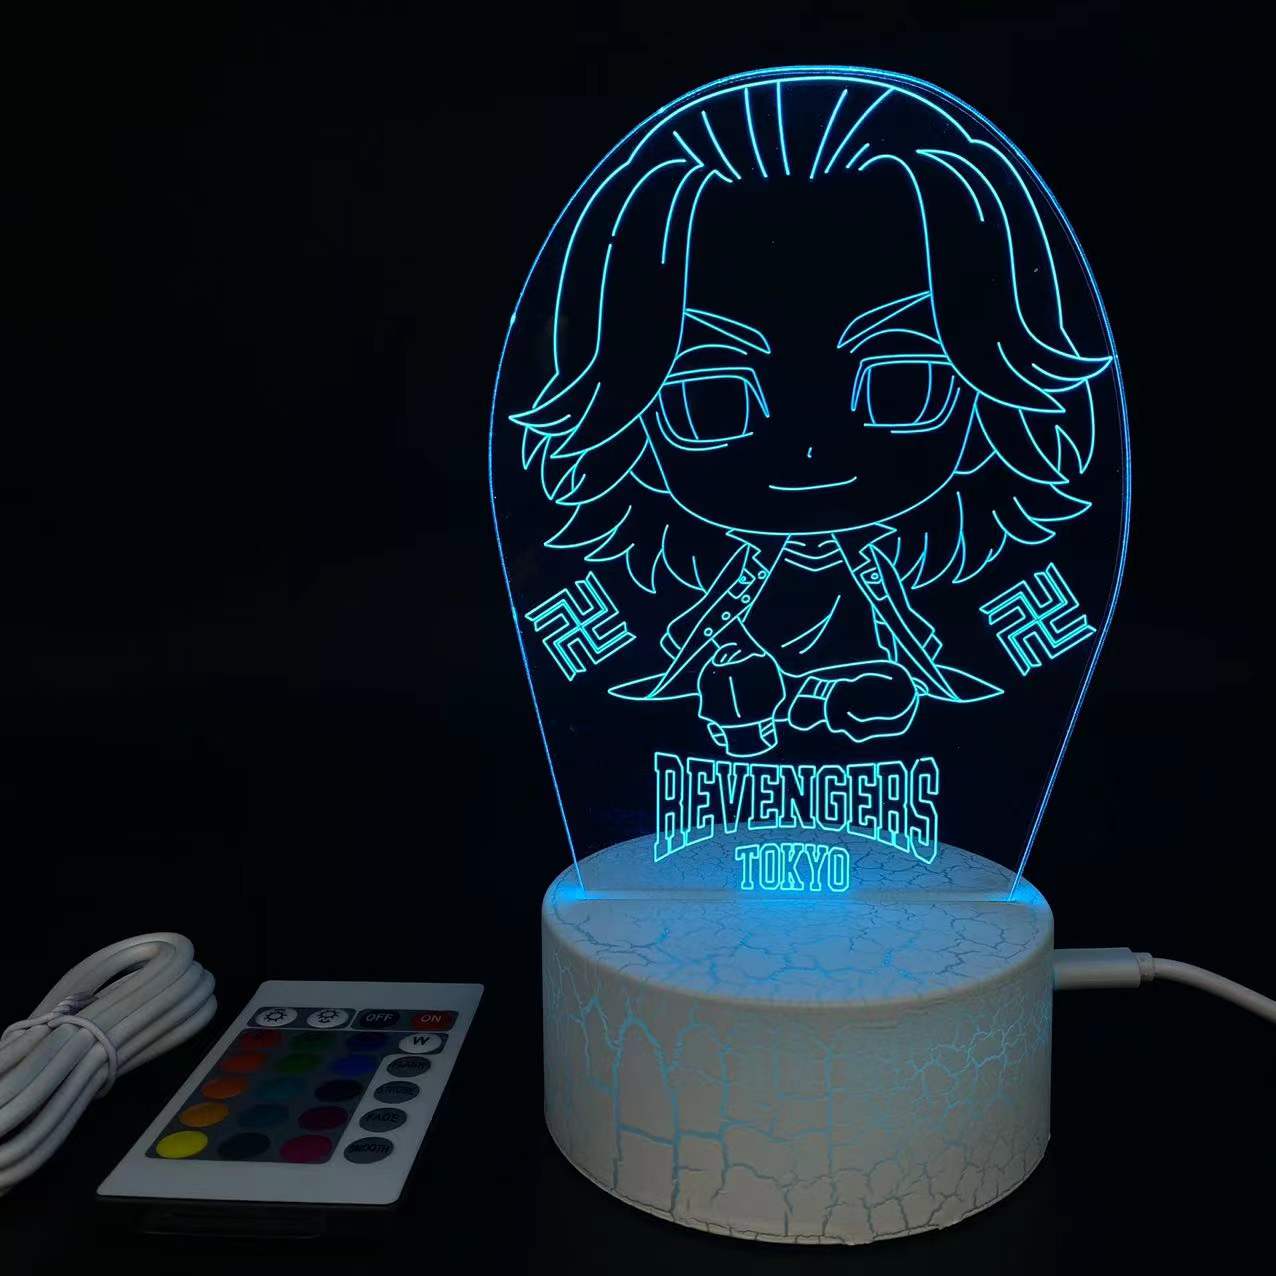 Tokyo Revengers anime 7 colours LED light